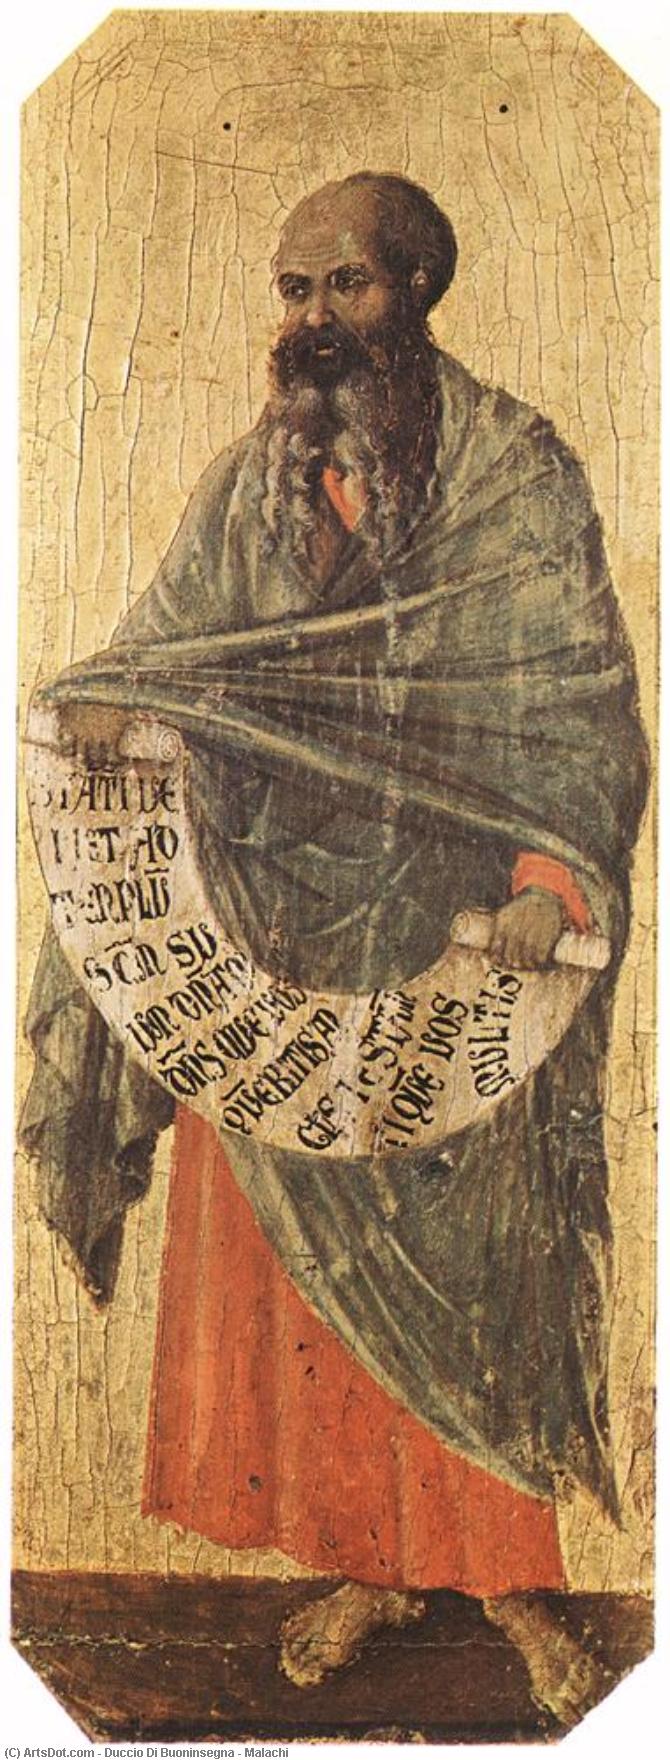 WikiOO.org - Encyclopedia of Fine Arts - Lukisan, Artwork Duccio Di Buoninsegna - Malachi